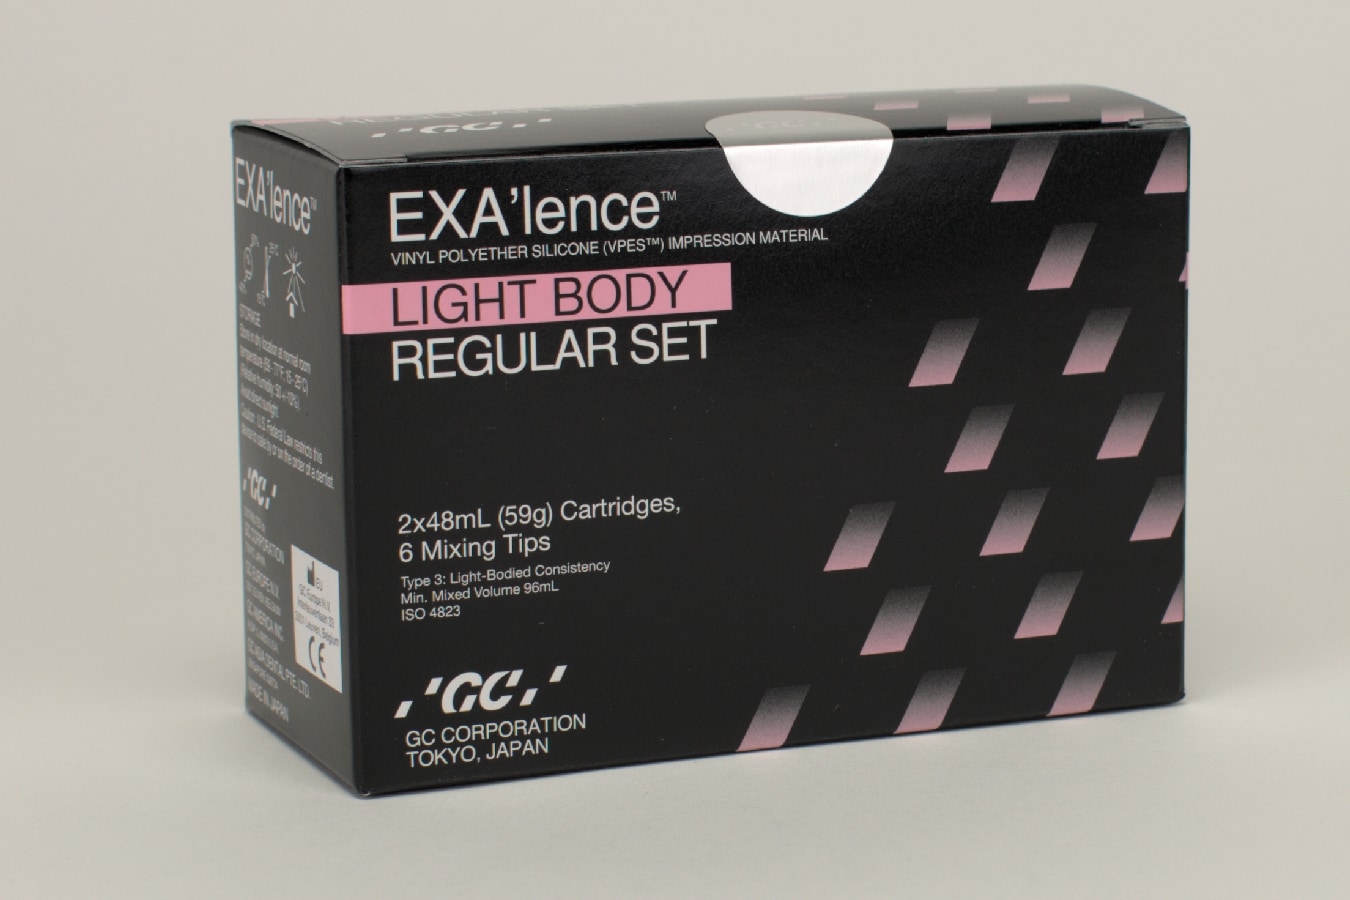 EXA'lence light Body regular, 2 x 48 ml